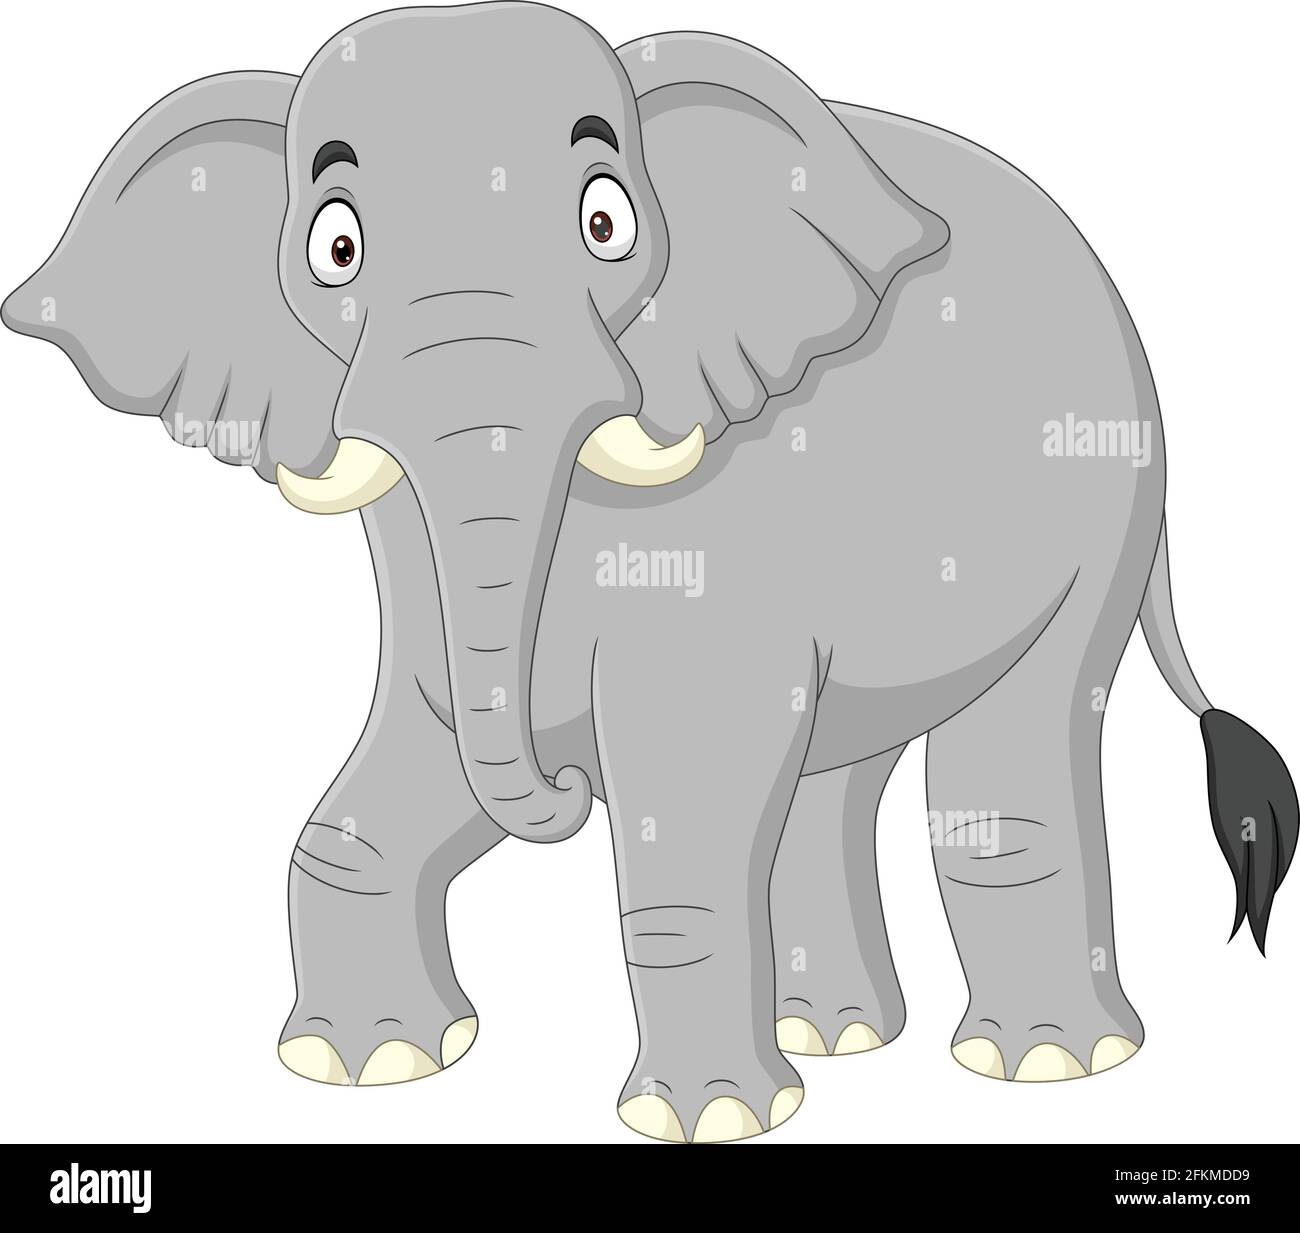 Cartoon elephant isolated on white background Stock Vector Image & Art -  Alamy